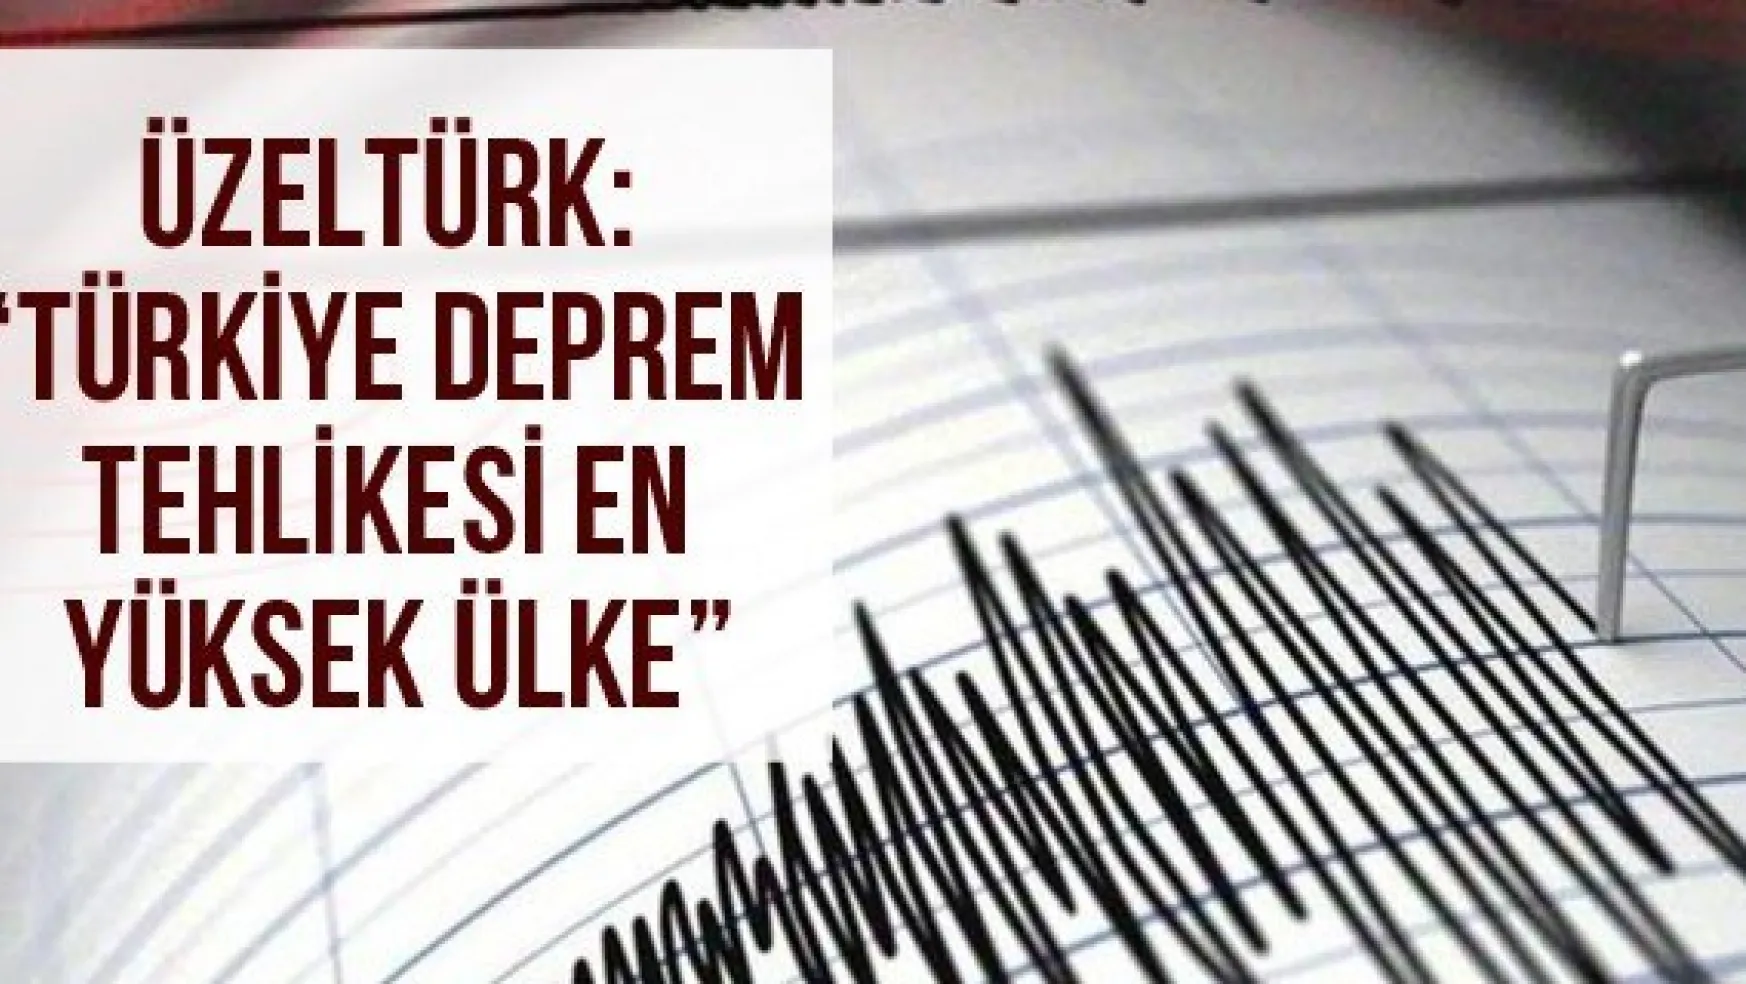 Üzeltürk: ' Türkiye Deprem Tehlikesi En Yüksek Ülke'